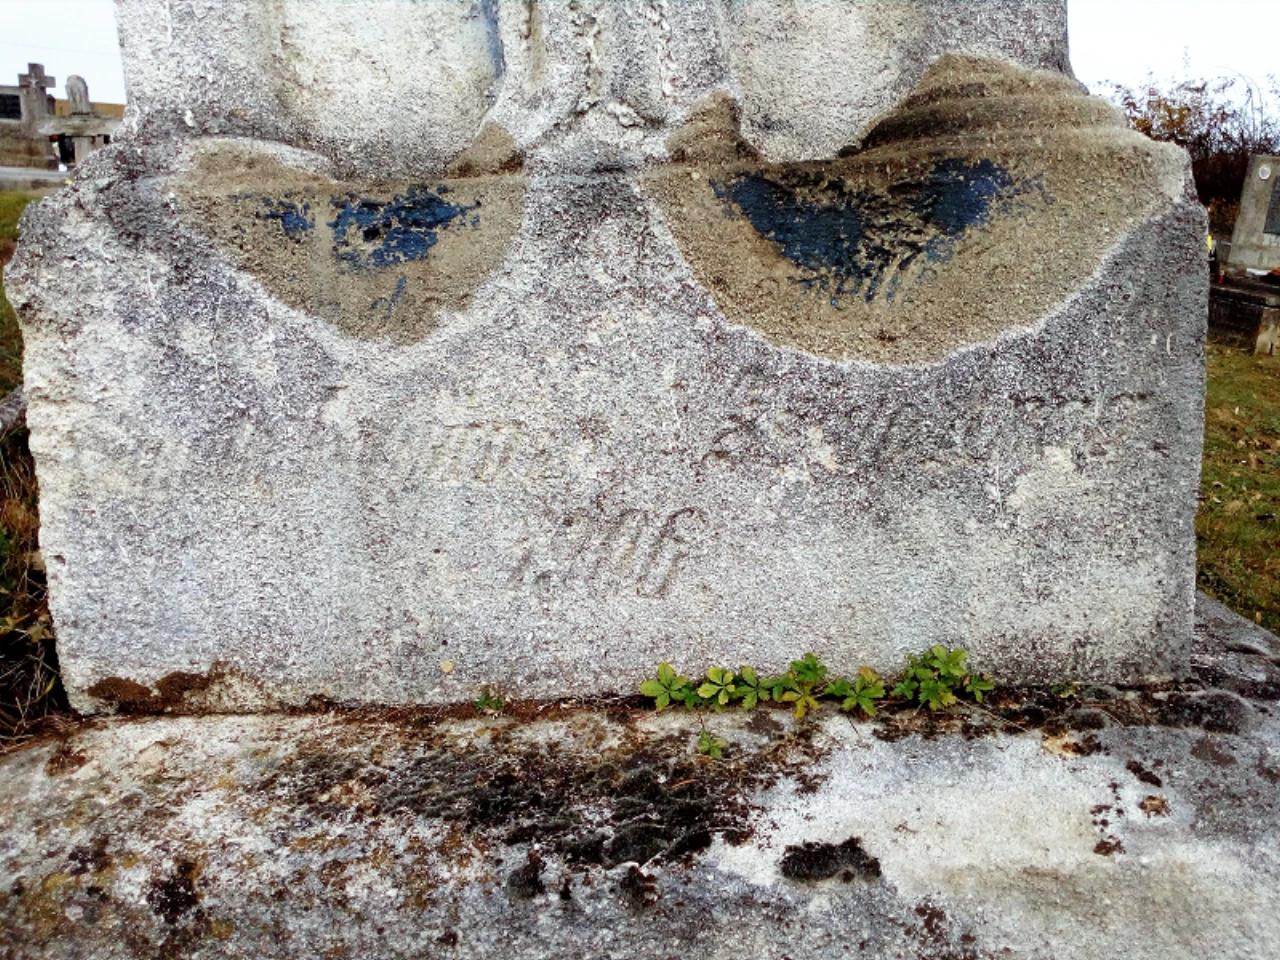 Kereszt, feszület (temetőben) nevü látnivaló 4. számú fényképe